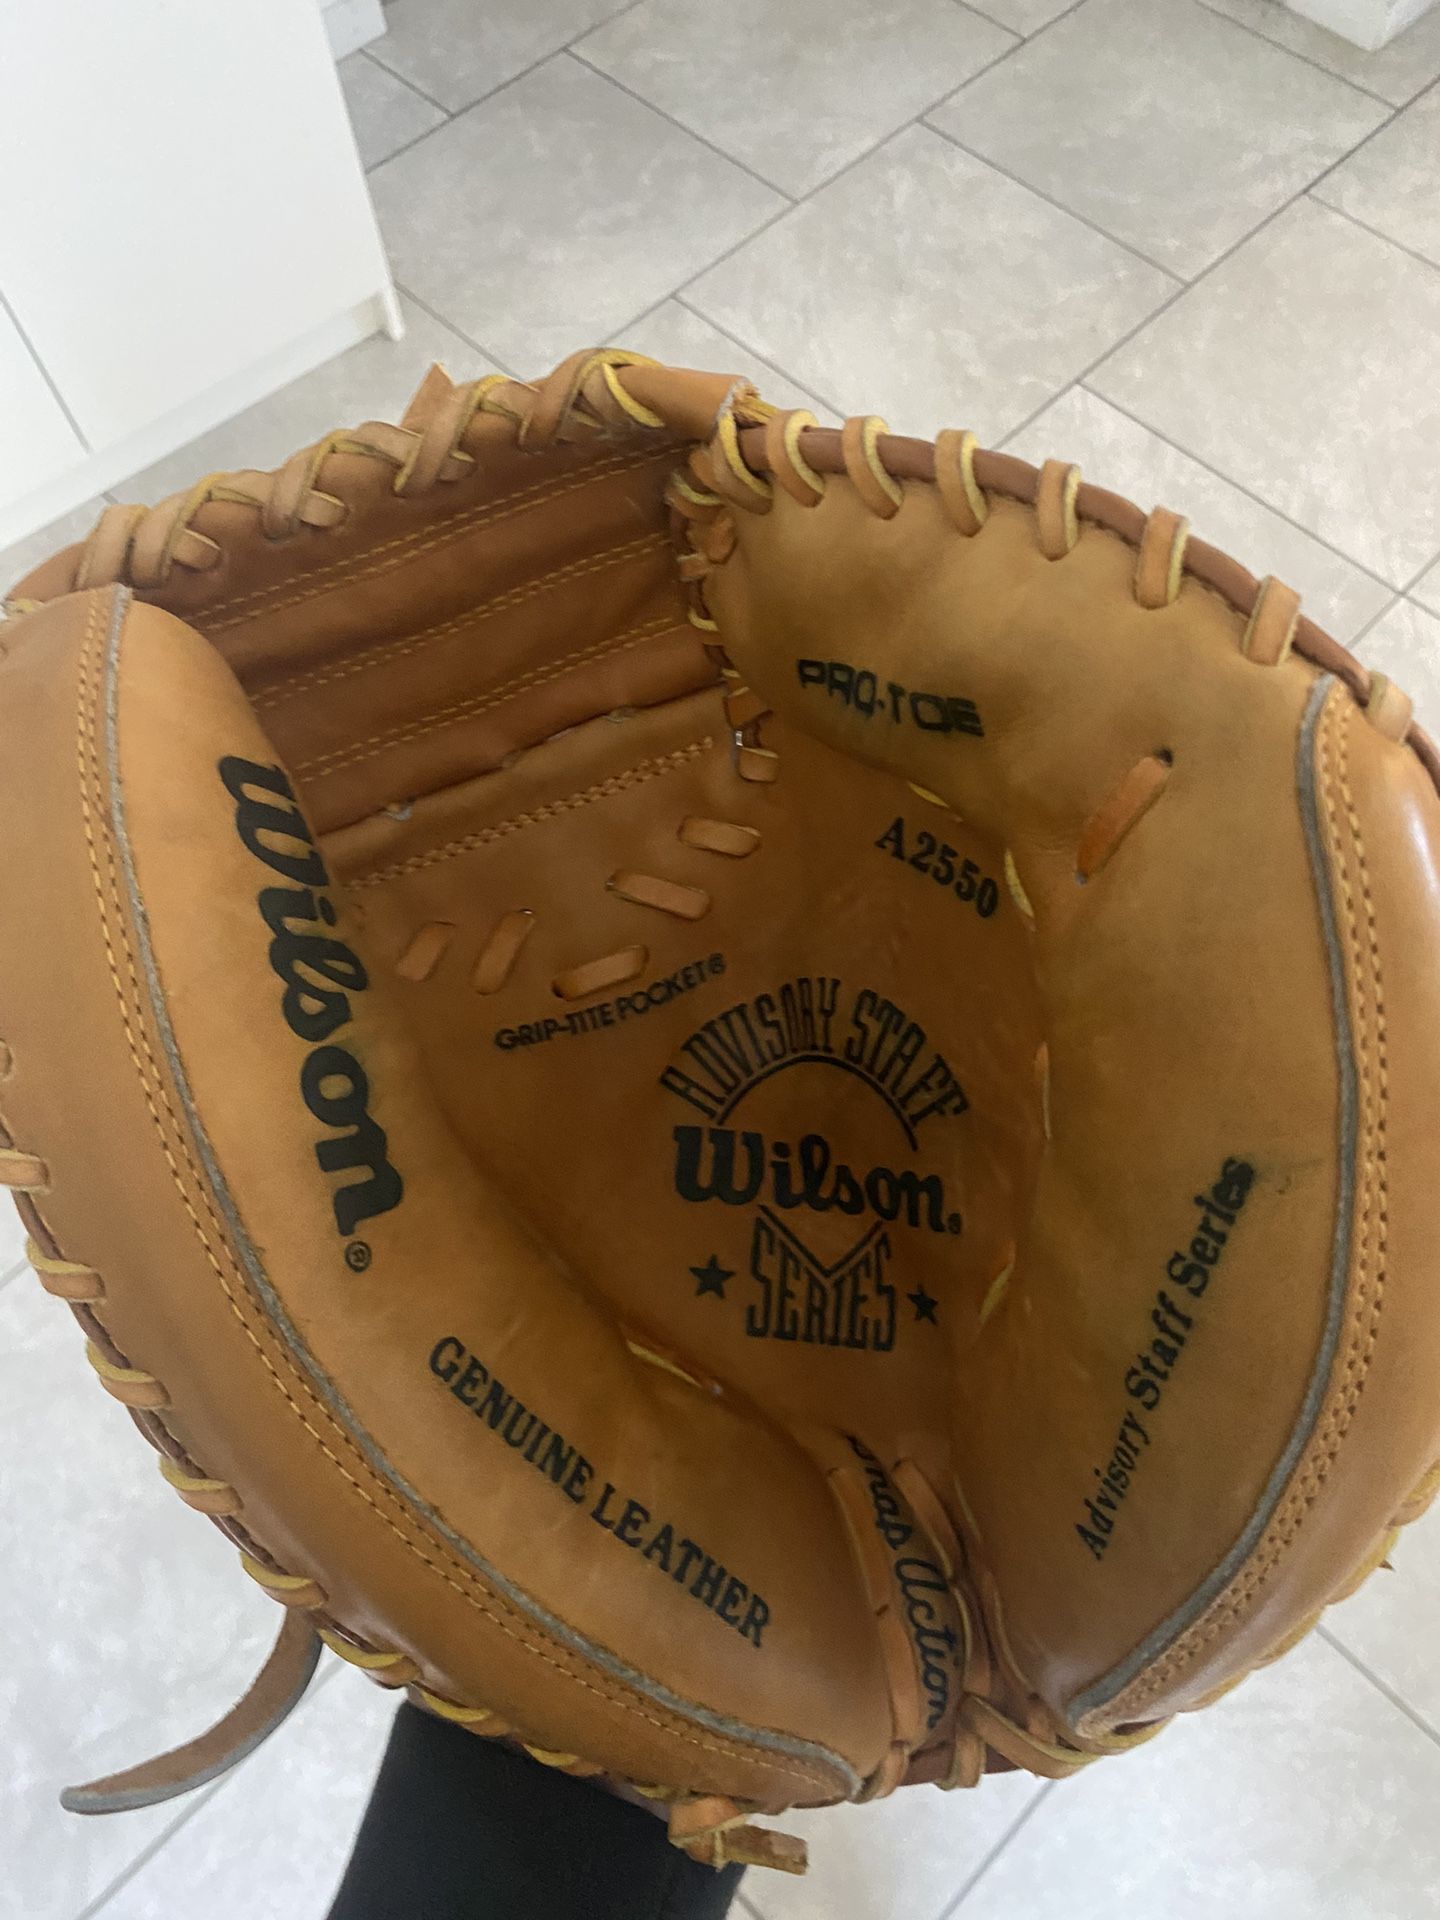 wilson catcher glove pretty much new still needs to break in